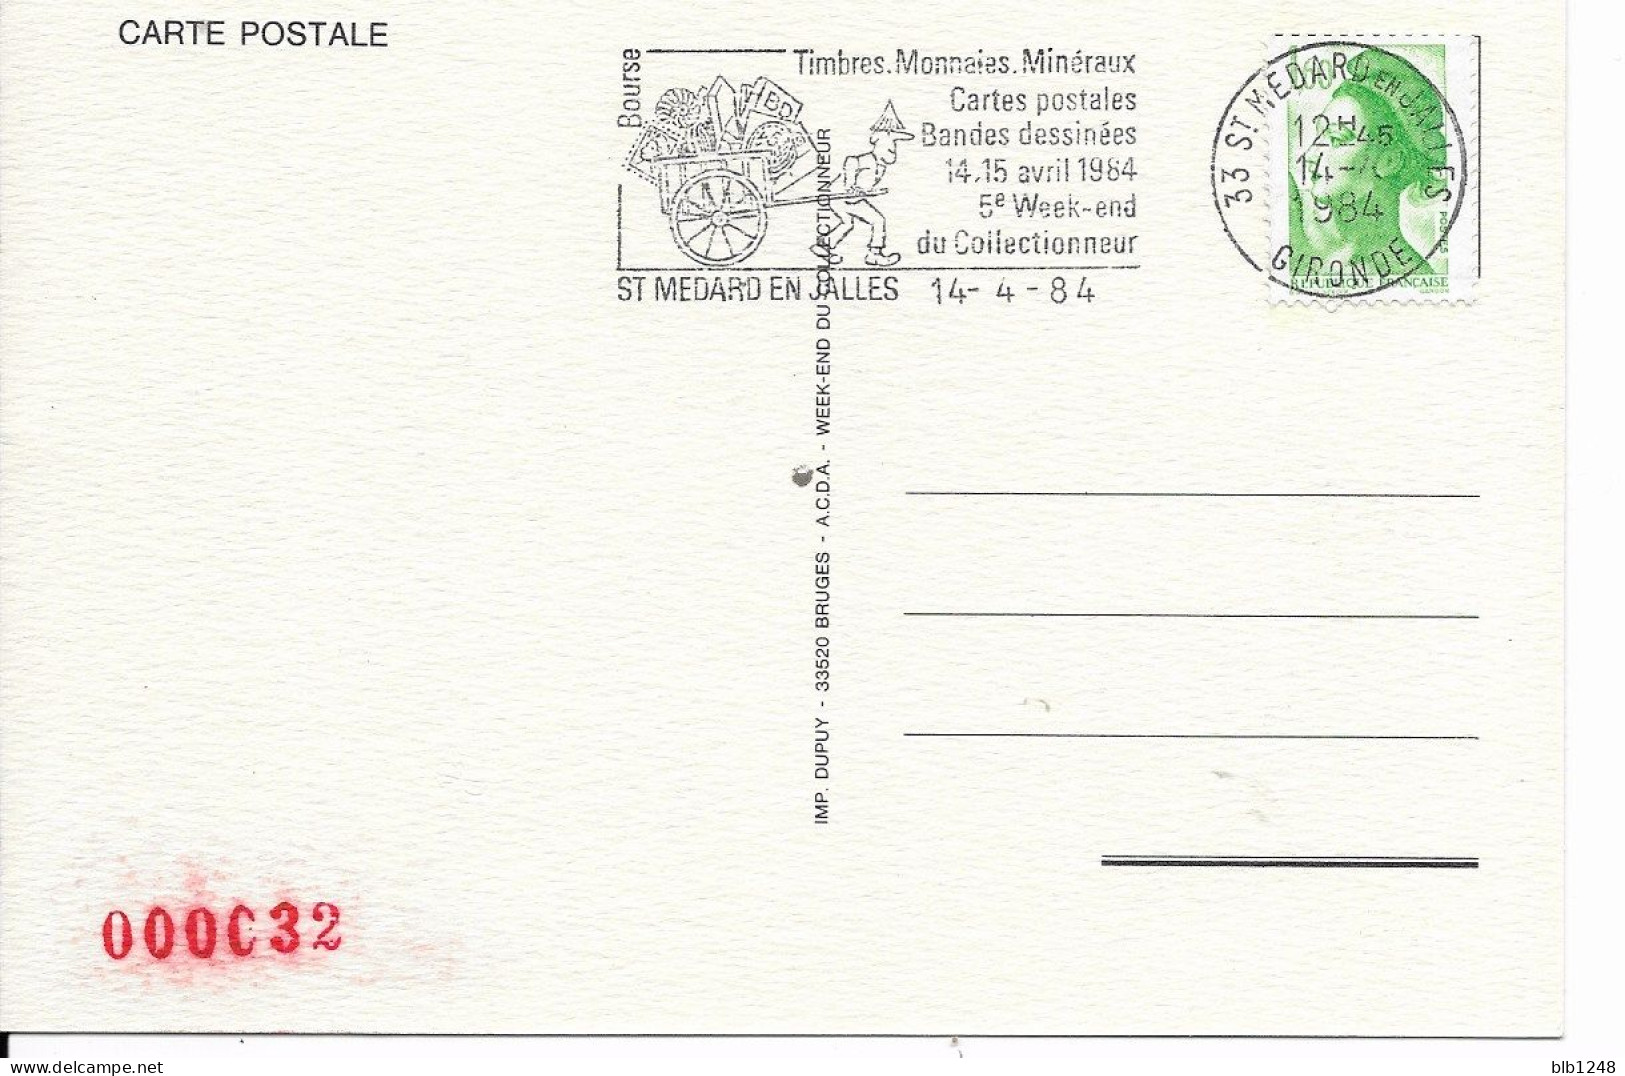 Bourses & Salons De Collections  Saint Medard En Jalles 5eme Week End Du Collectionneur 1984 - Bourses & Salons De Collections